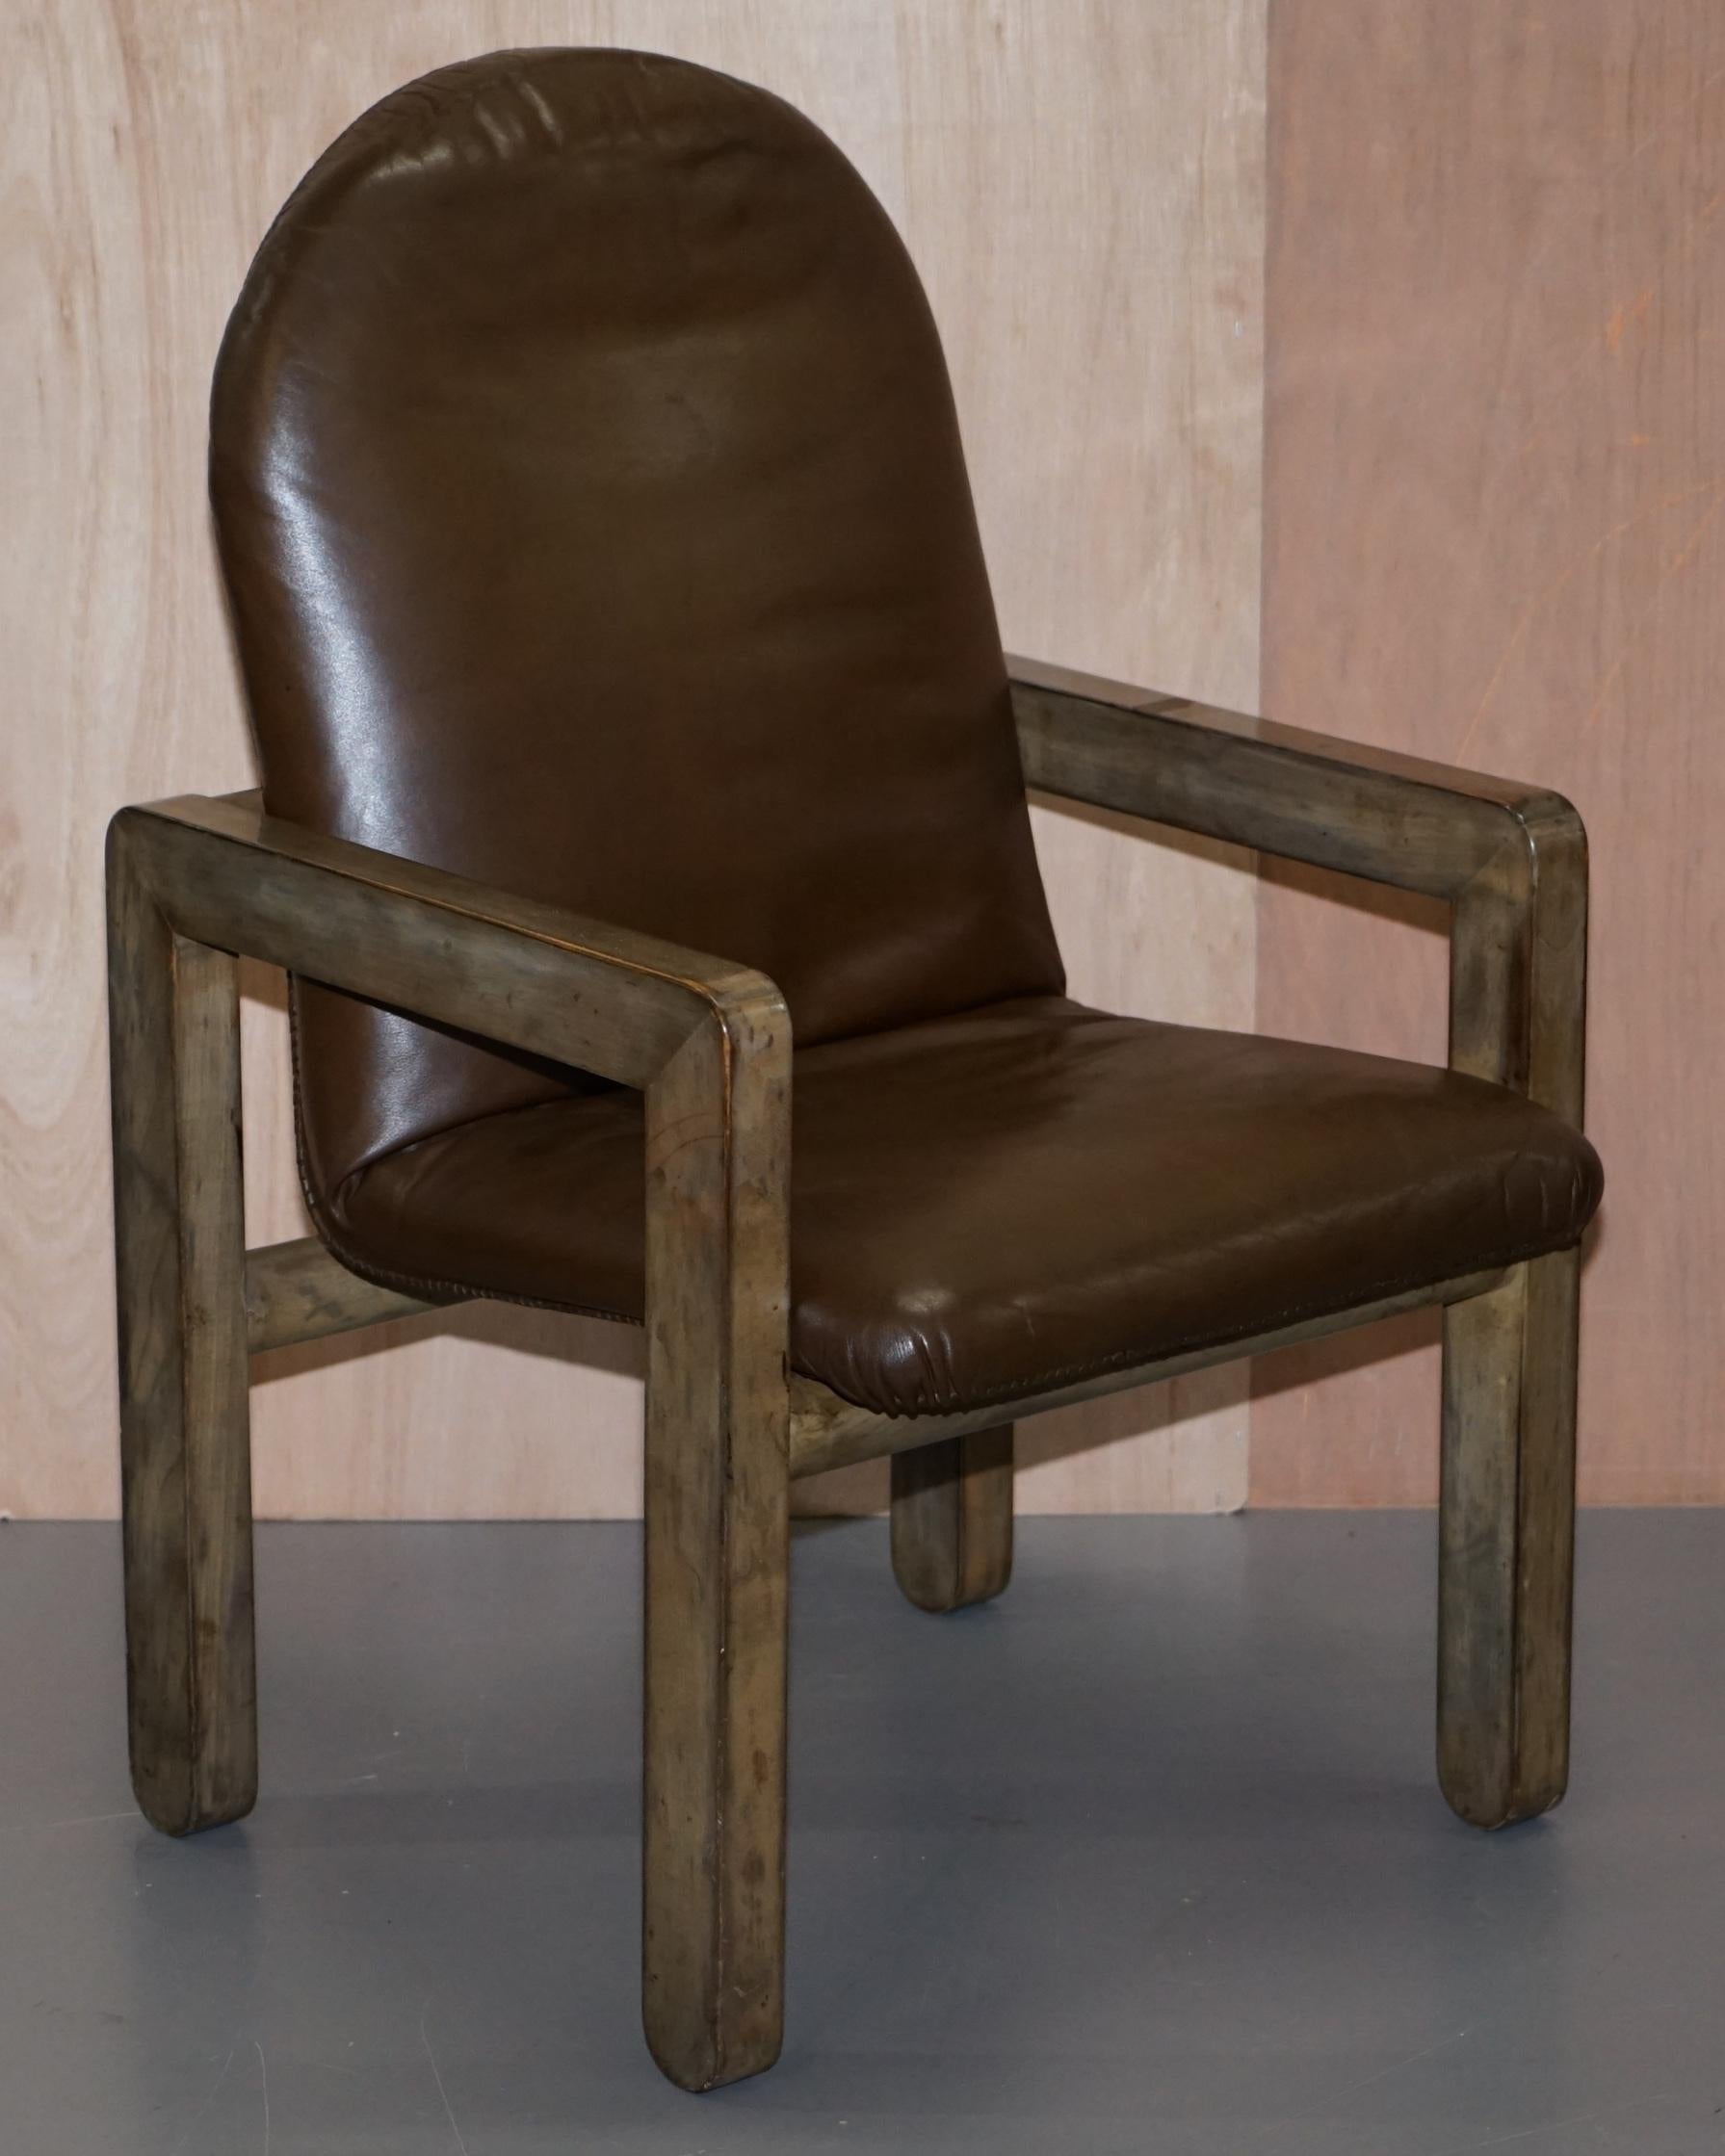 Wir freuen uns, Ihnen dieses atemberaubende Paar originaler moderner John Makepeace-Sessel aus braunem Leder aus der Mitte des Jahrhunderts anbieten zu können

Ein sehr gut aussehend und Sammler Paar Stühle, sie sind 40-50 Jahre alt und haben eine